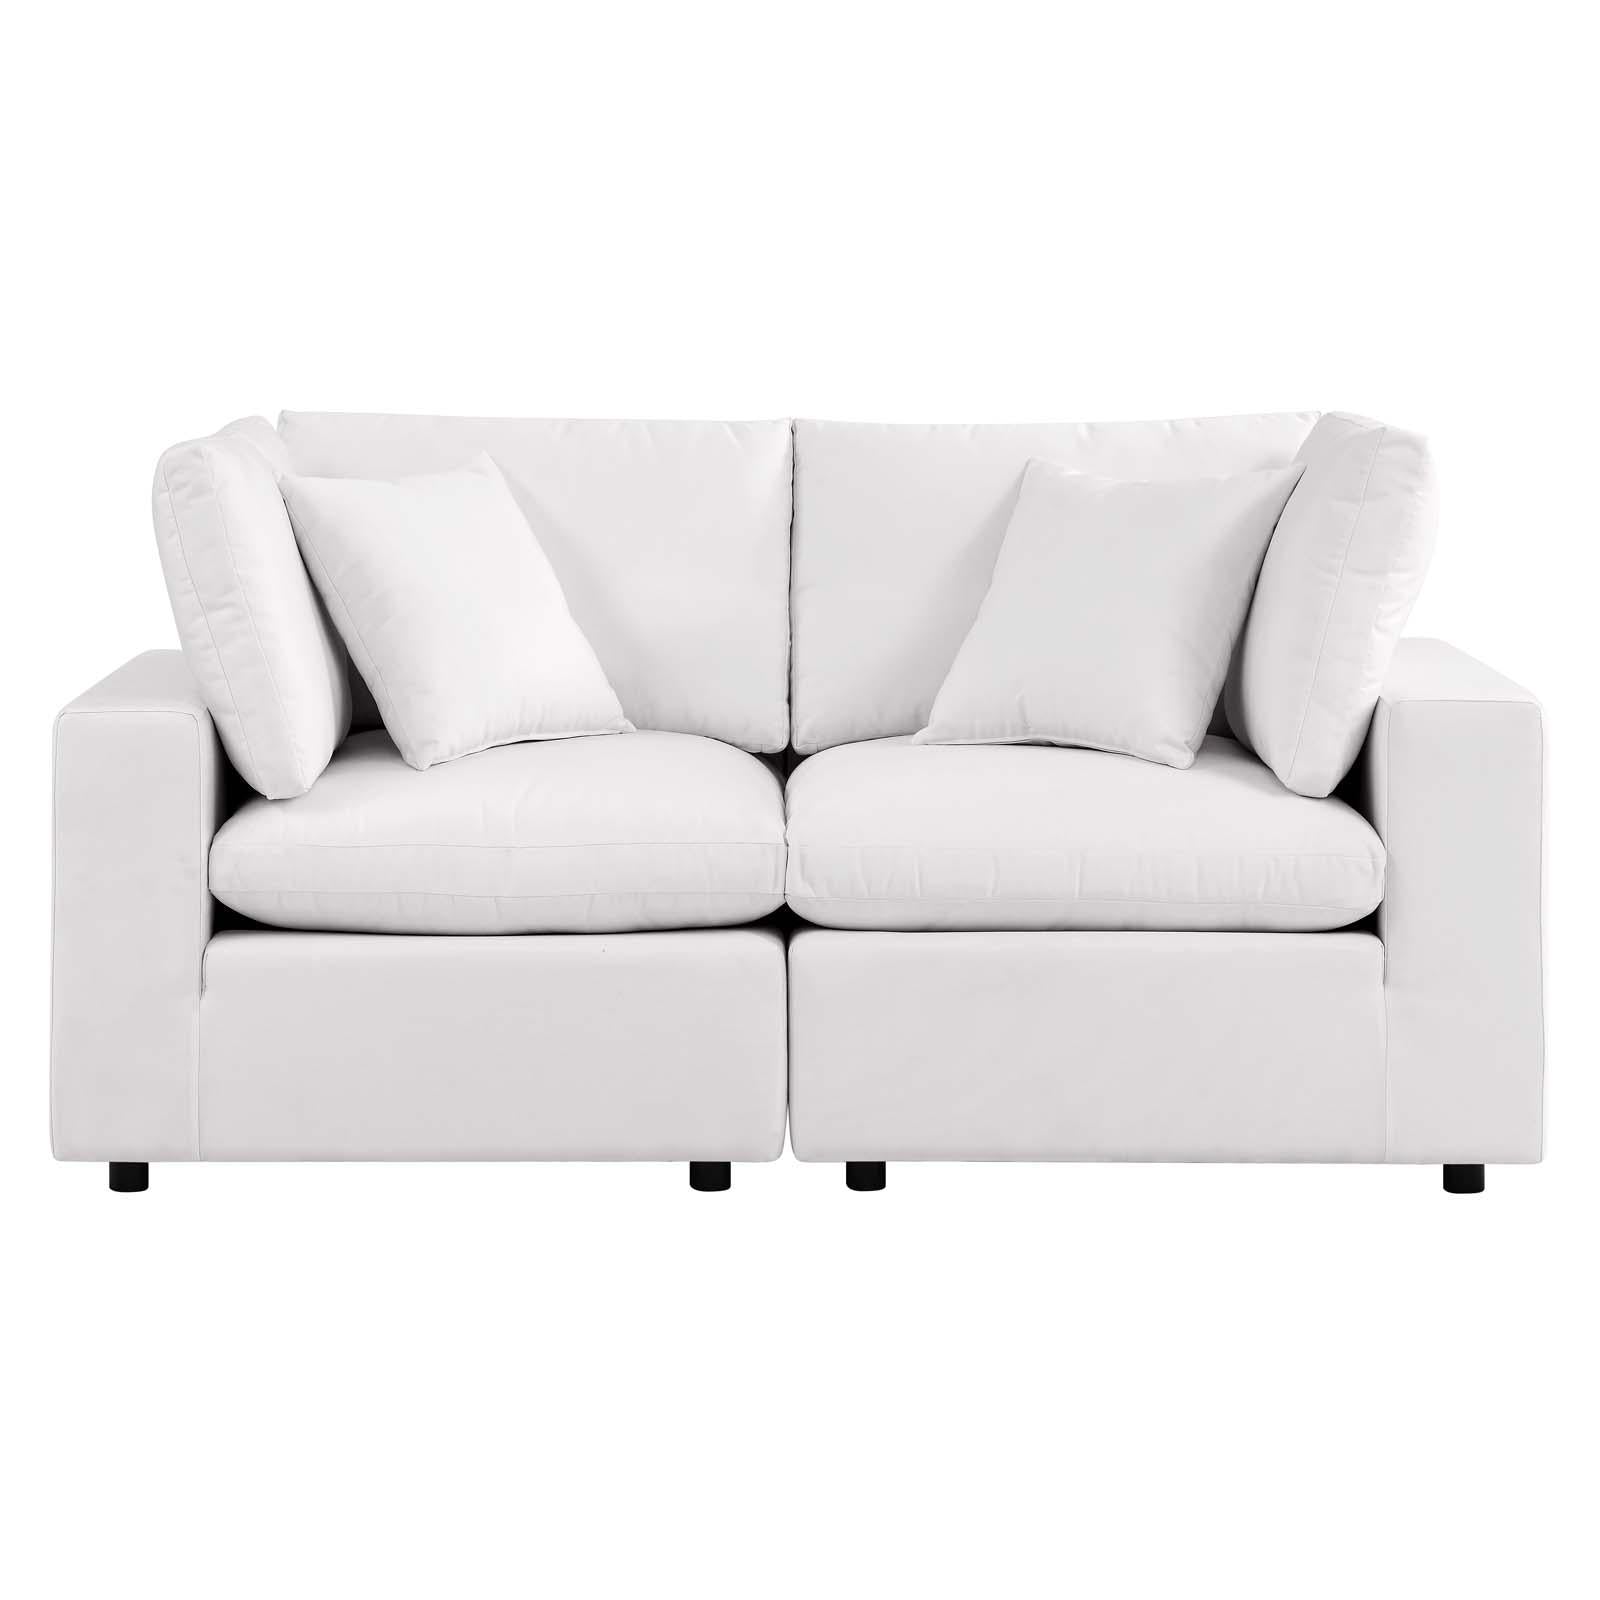 Modway Furniture Modern Commix Overstuffed Outdoor Patio Loveseat - EEI-5576